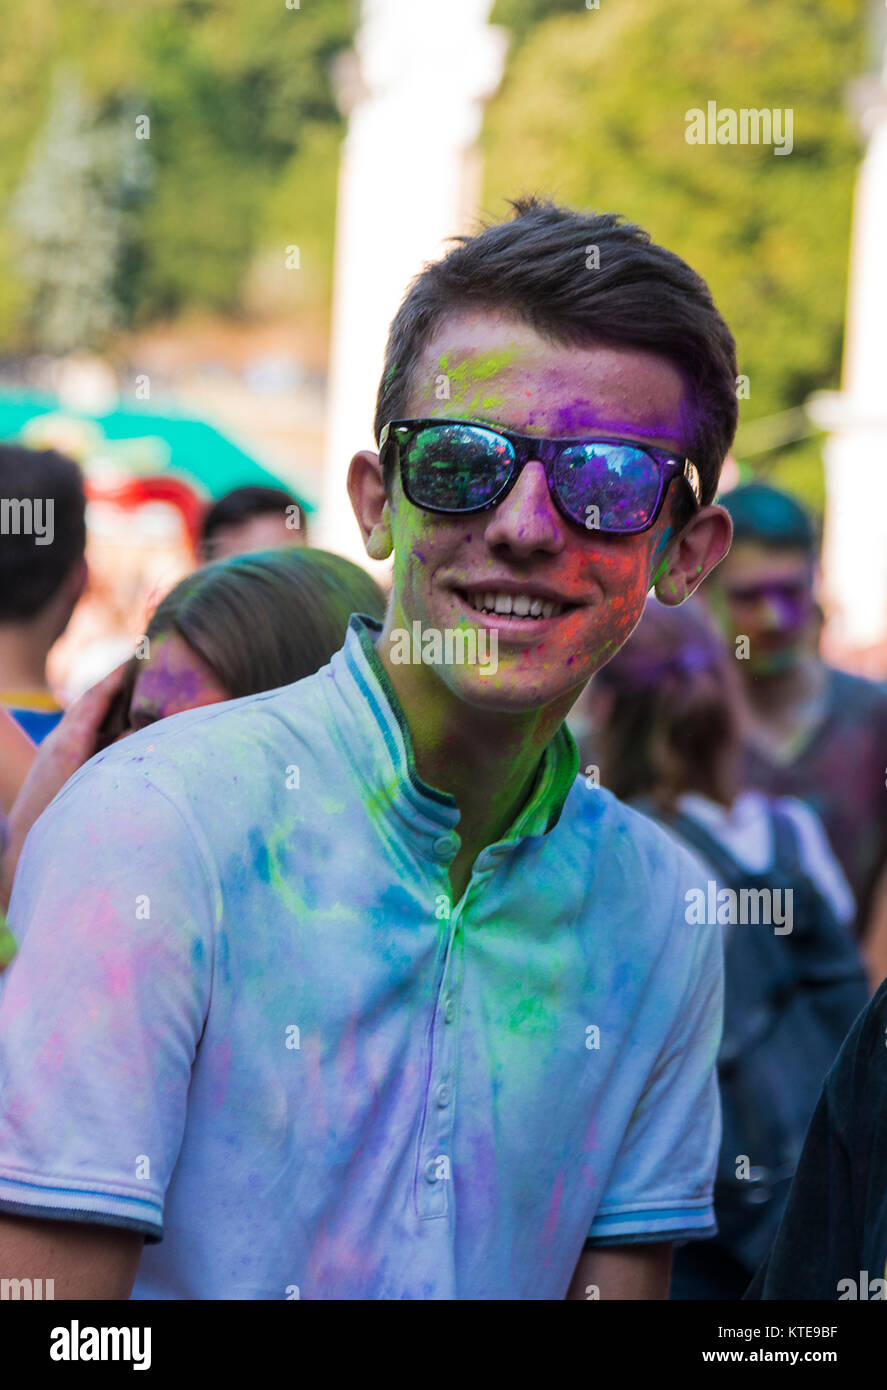 Lemberg, Ukraine - 30. August 2015: Mann mit Gläser Spaß haben während des Festivals der Farbe in einem Stadtpark in Lemberg. Stockfoto